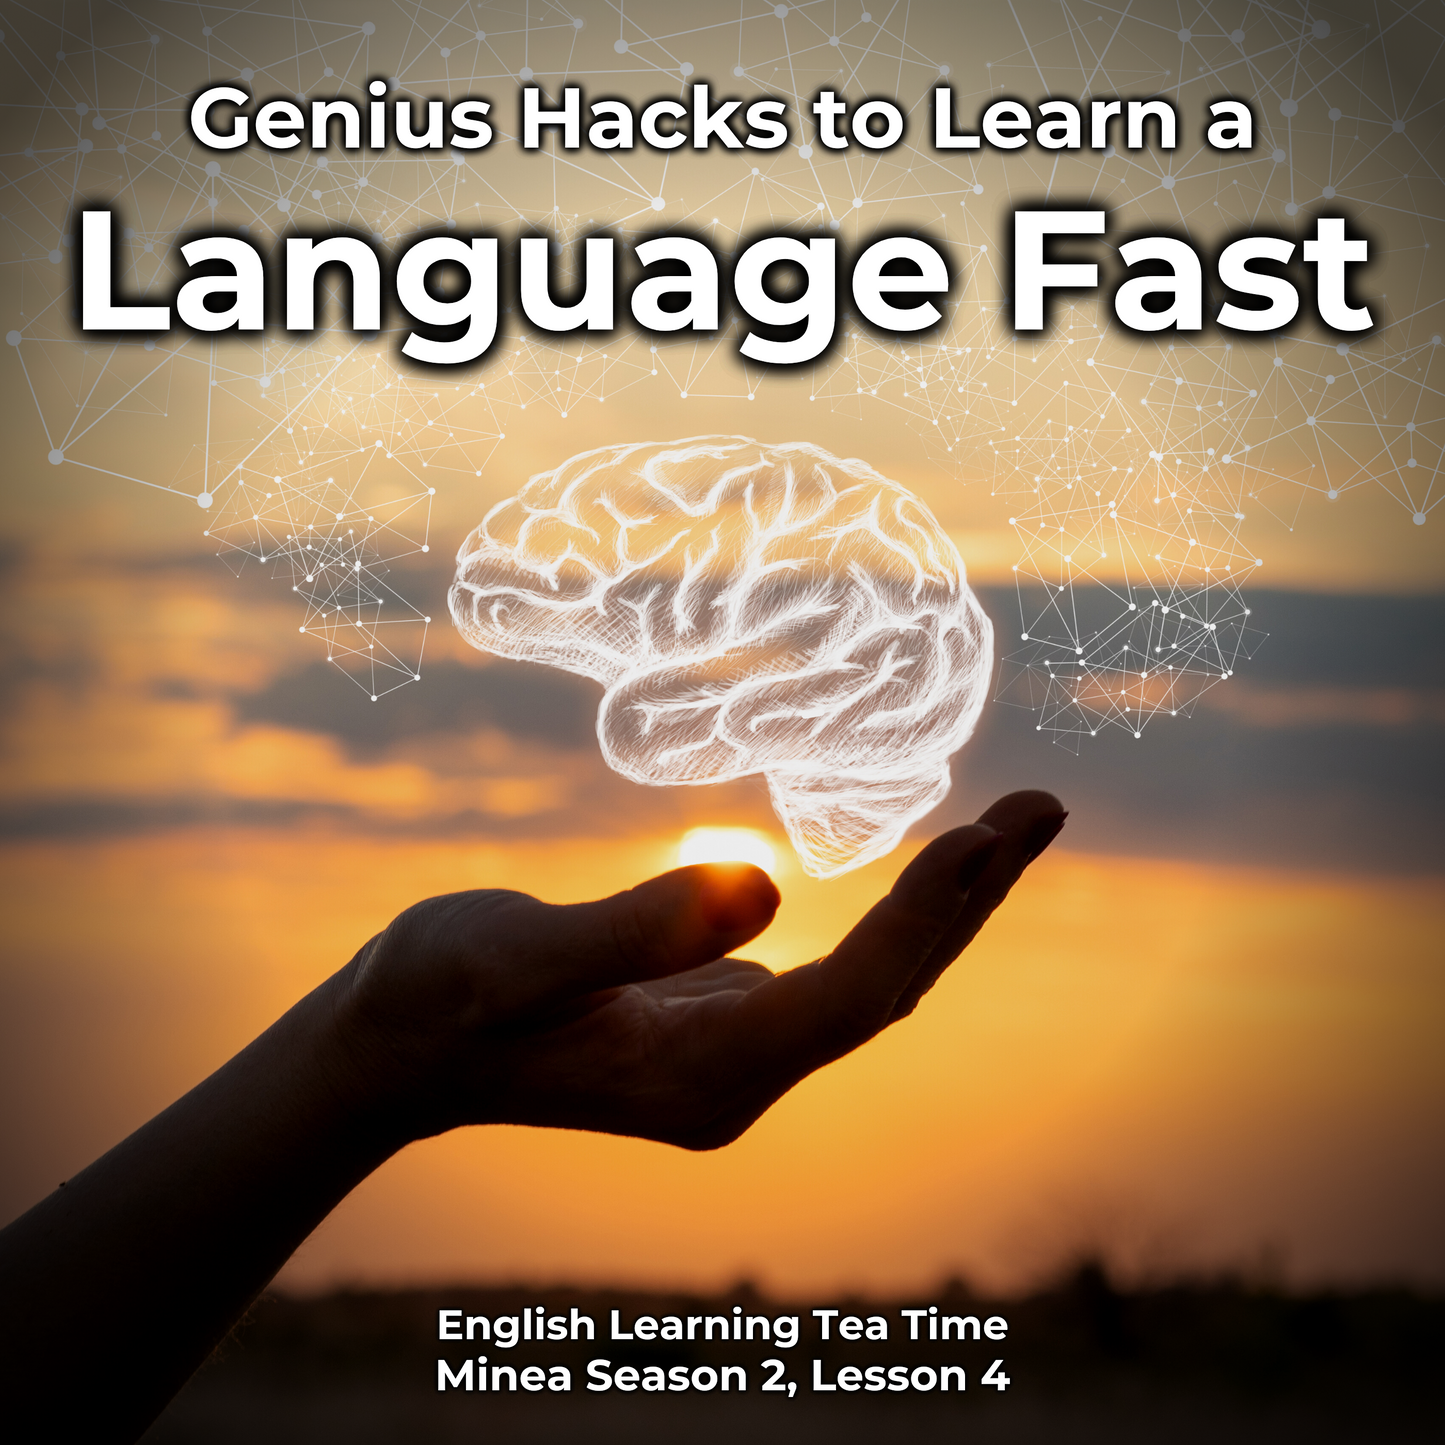 English Learning Tea Time: Genius Hacks to Learn a Language Fast (Minea Season 2, Lesson 4)